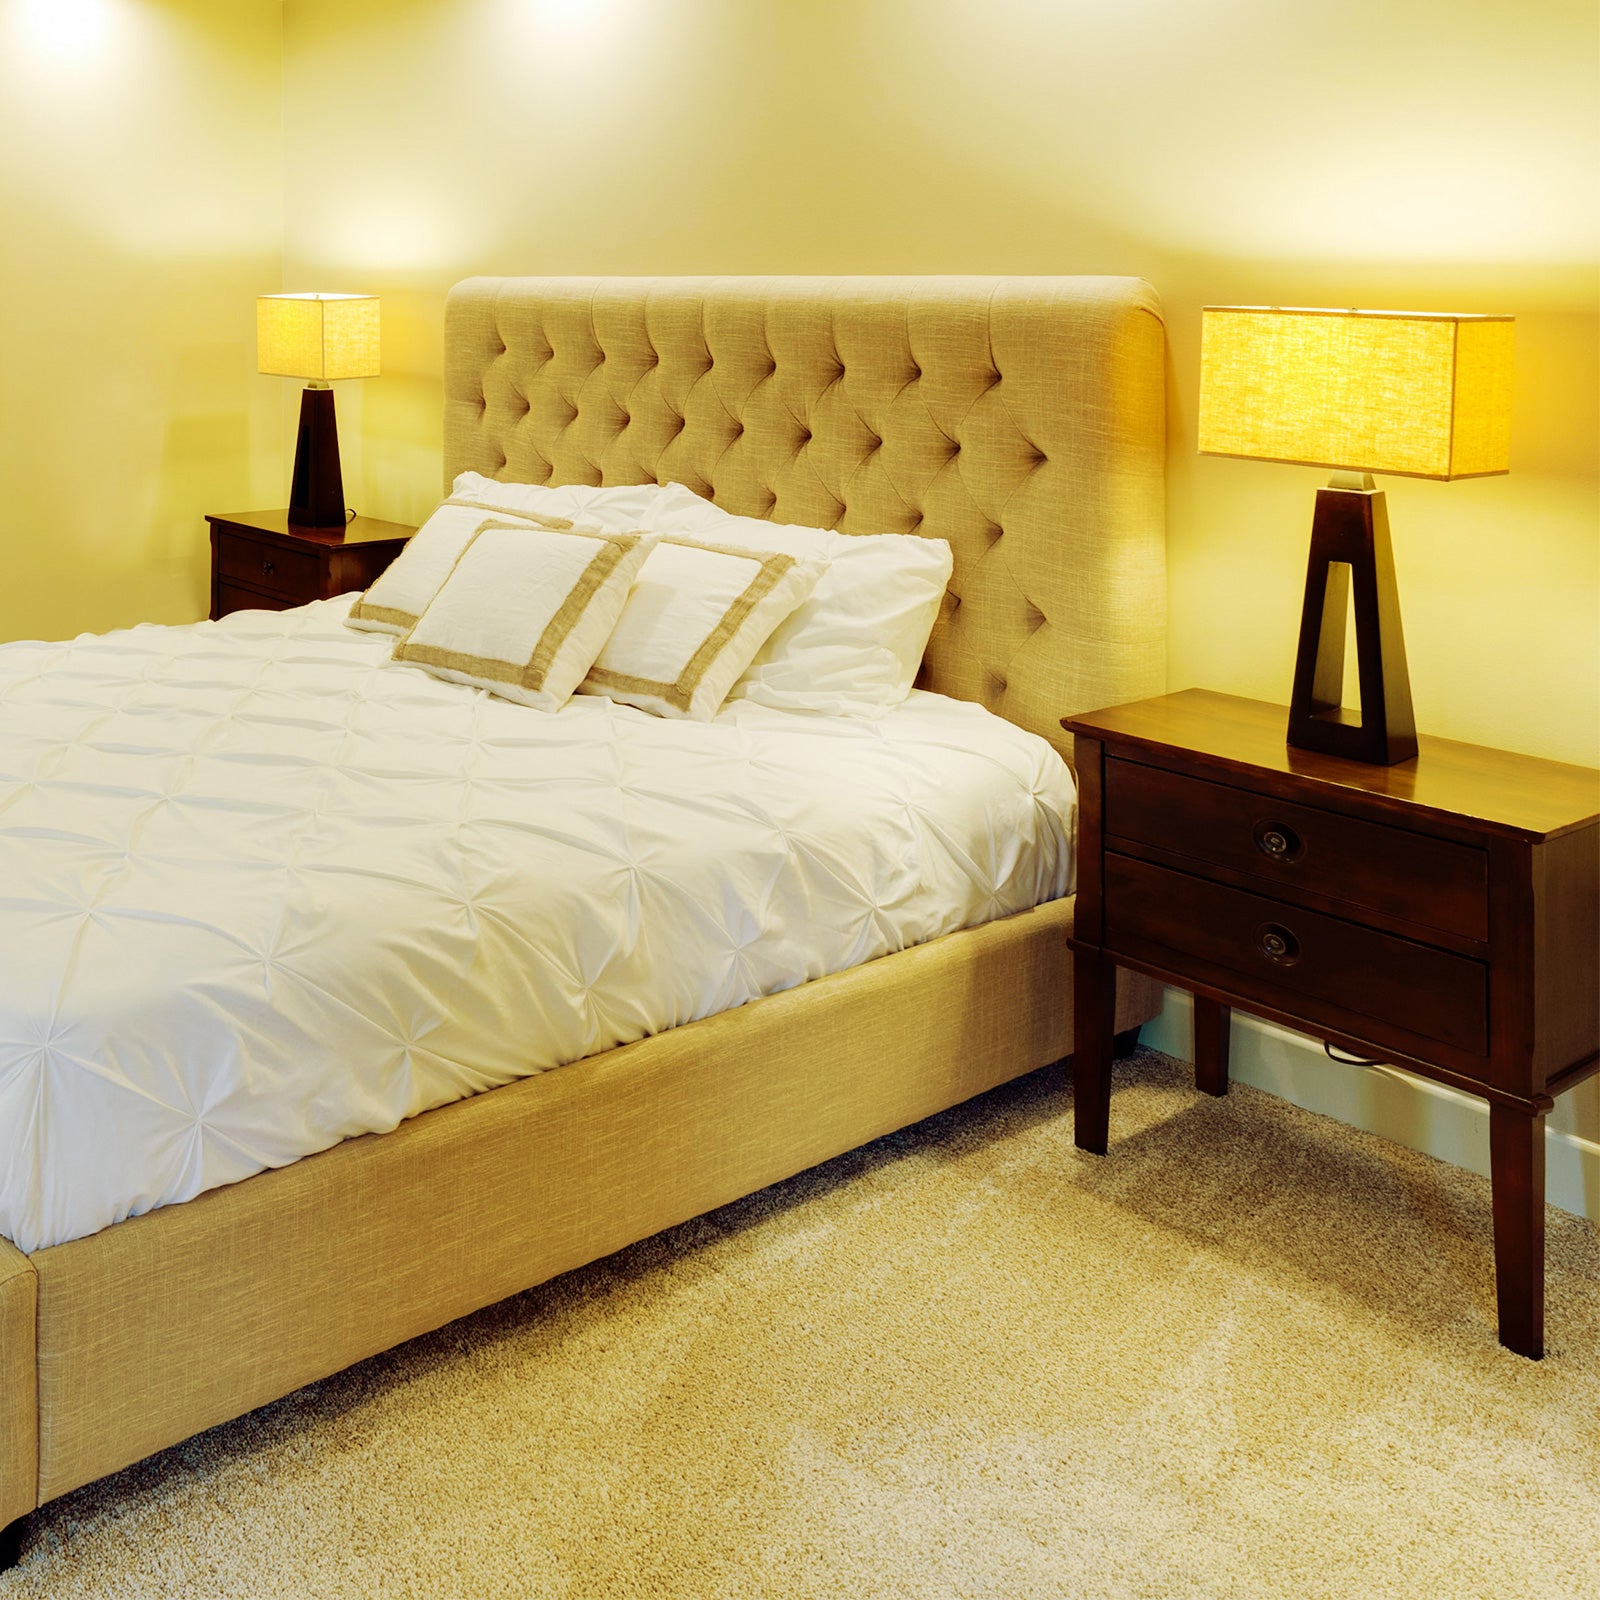 Upgraded A15 9W LED 2700K/3000K/4000K/5000K Light Bulb, suitable for bedroom